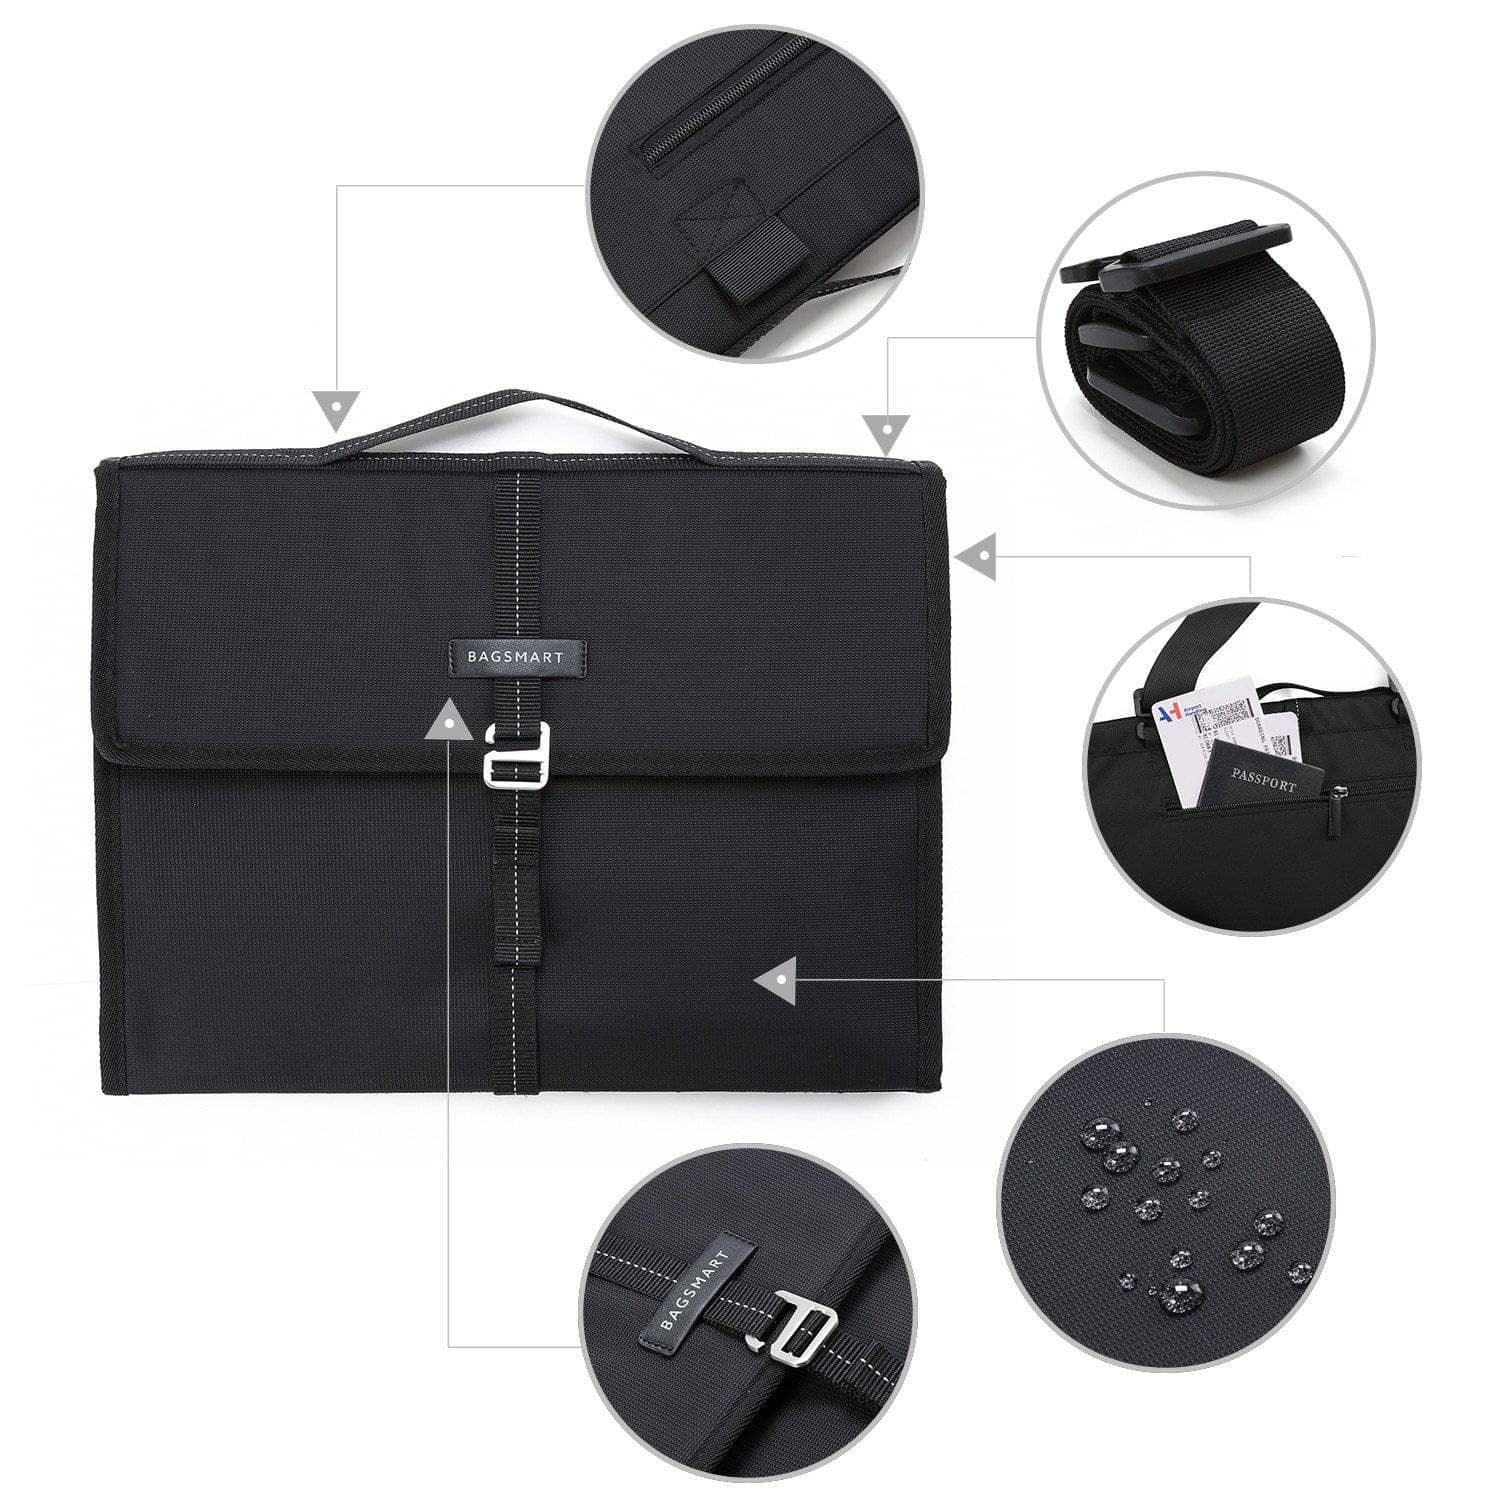 BAGSMART 13" Travel Bag Laptop Tablet Portfolio MacBook Pro